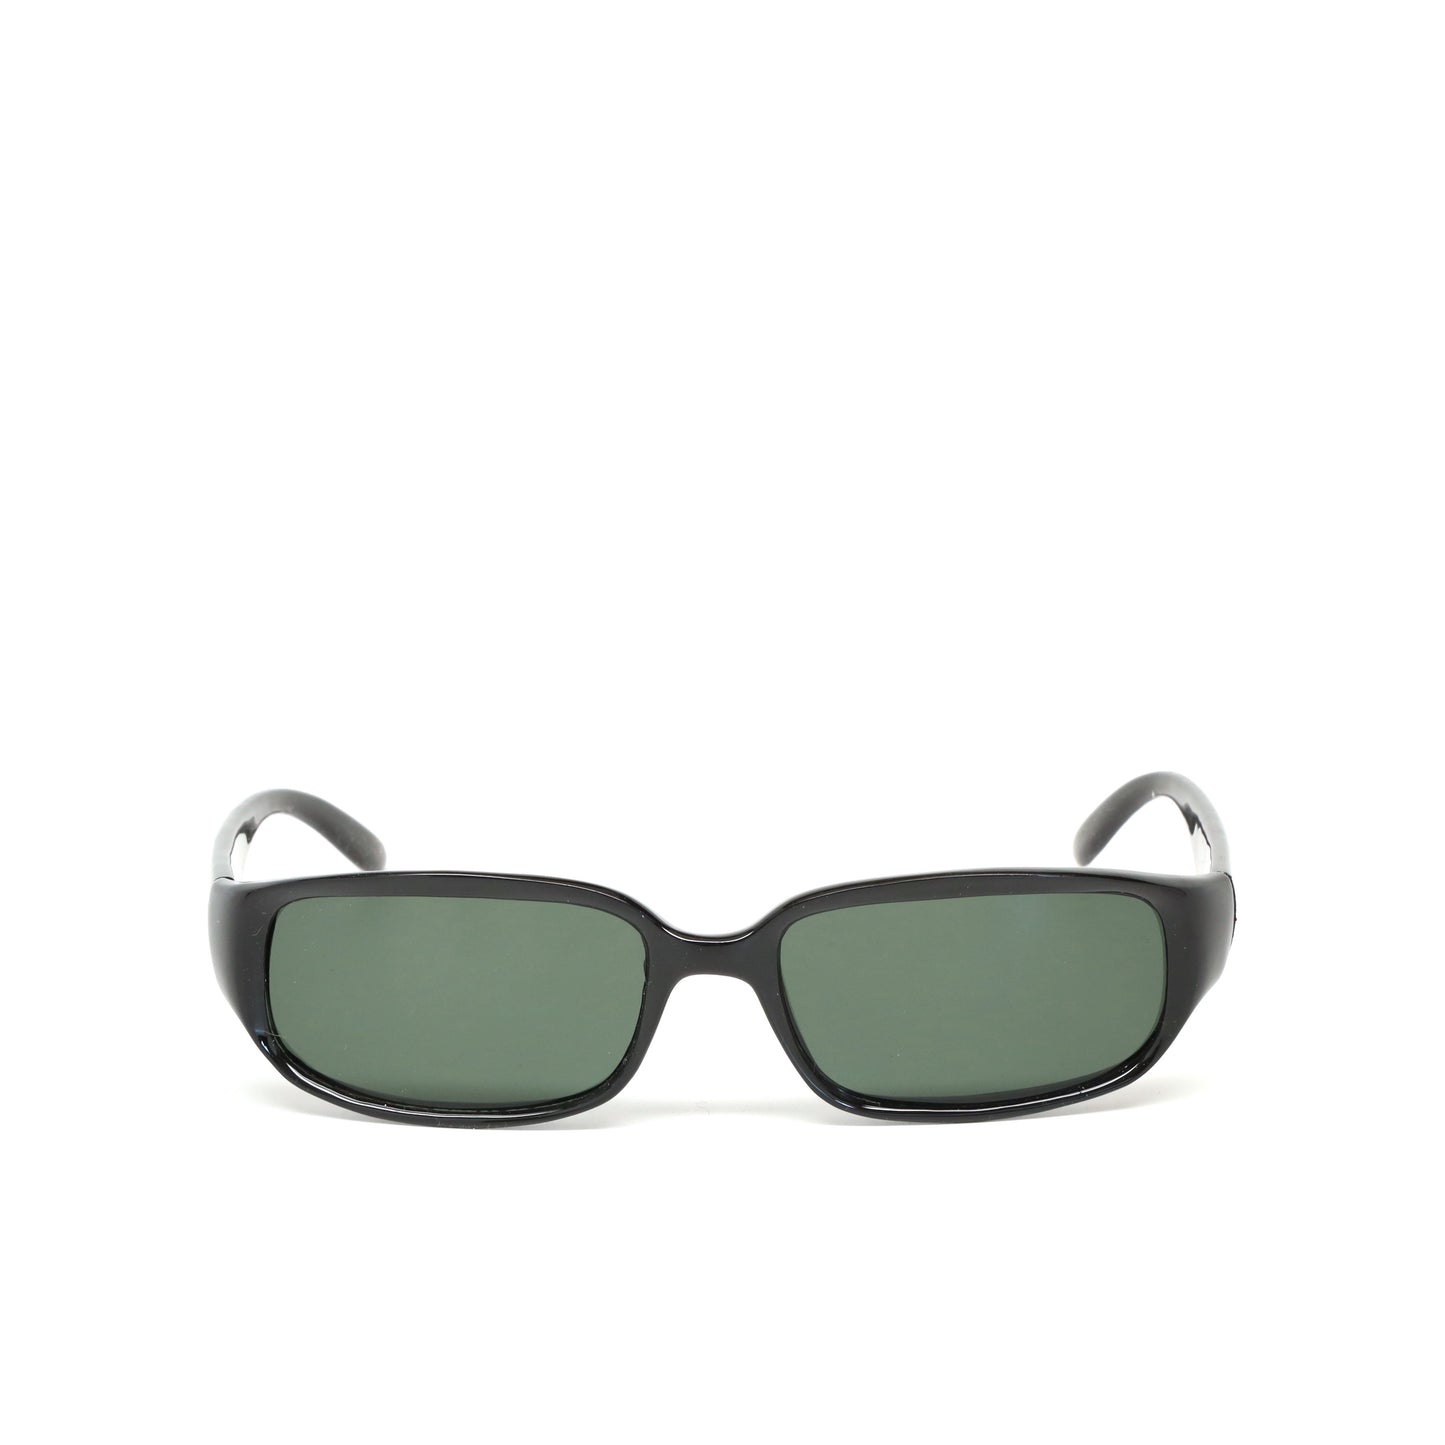 Vintage Standard Size Rectangle Frame Sunglasses - Black